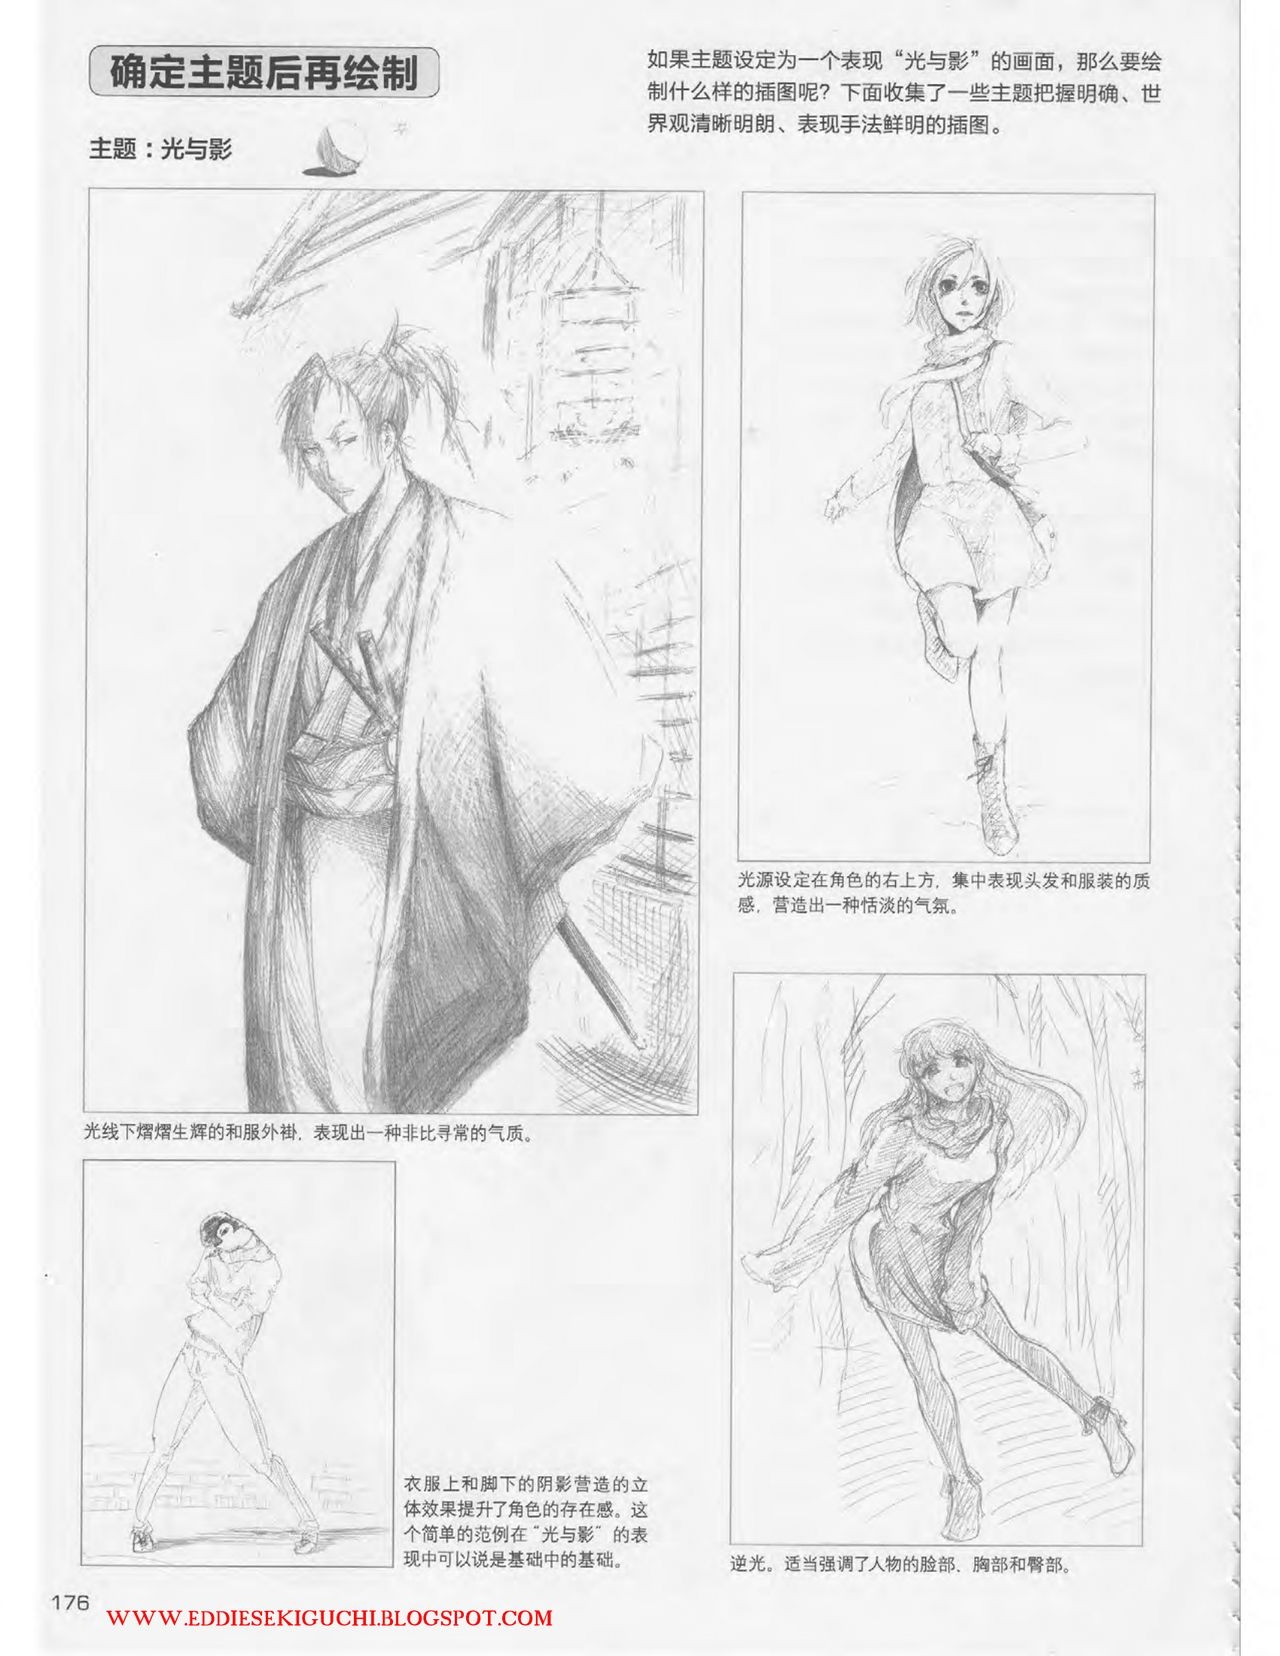 Japanese Manga Master Lecture 3: Lin Akira and Kakumaru Maru Talk About Glamorous Character Modeling 175